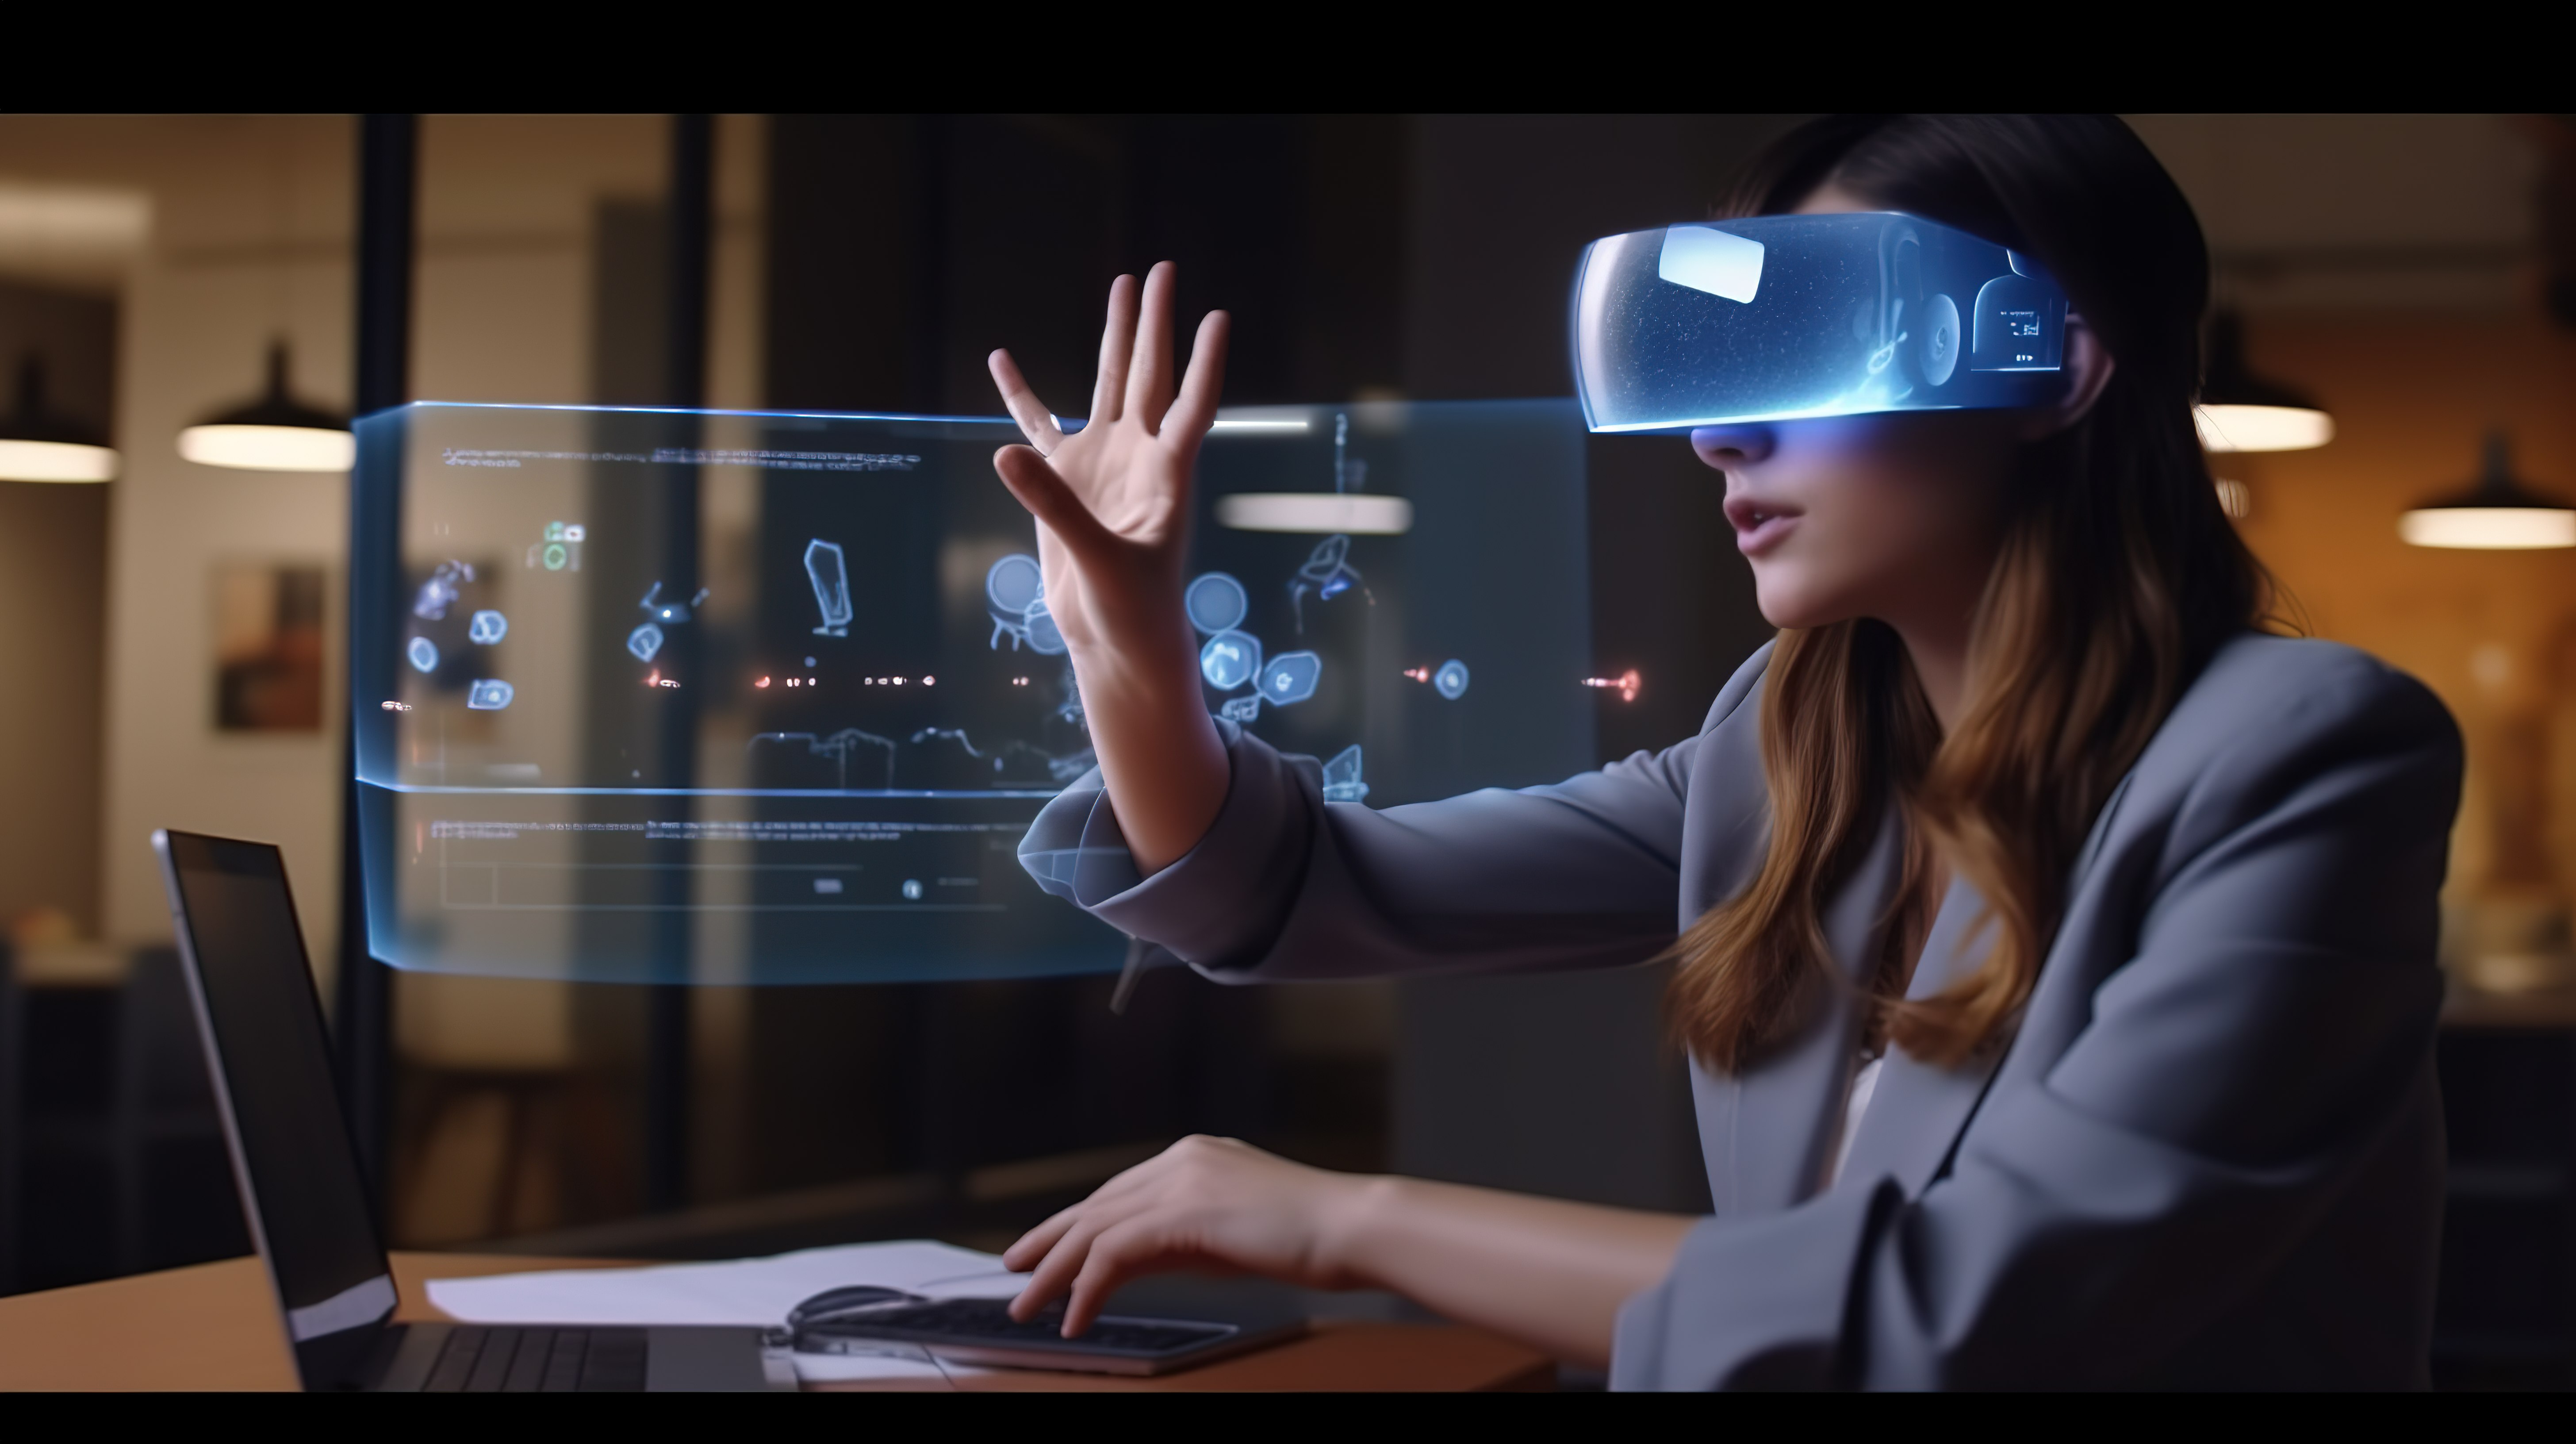 戴虚拟现实耳机的女性在远程工作时与笔记本电脑上的 3D 对象交互图片